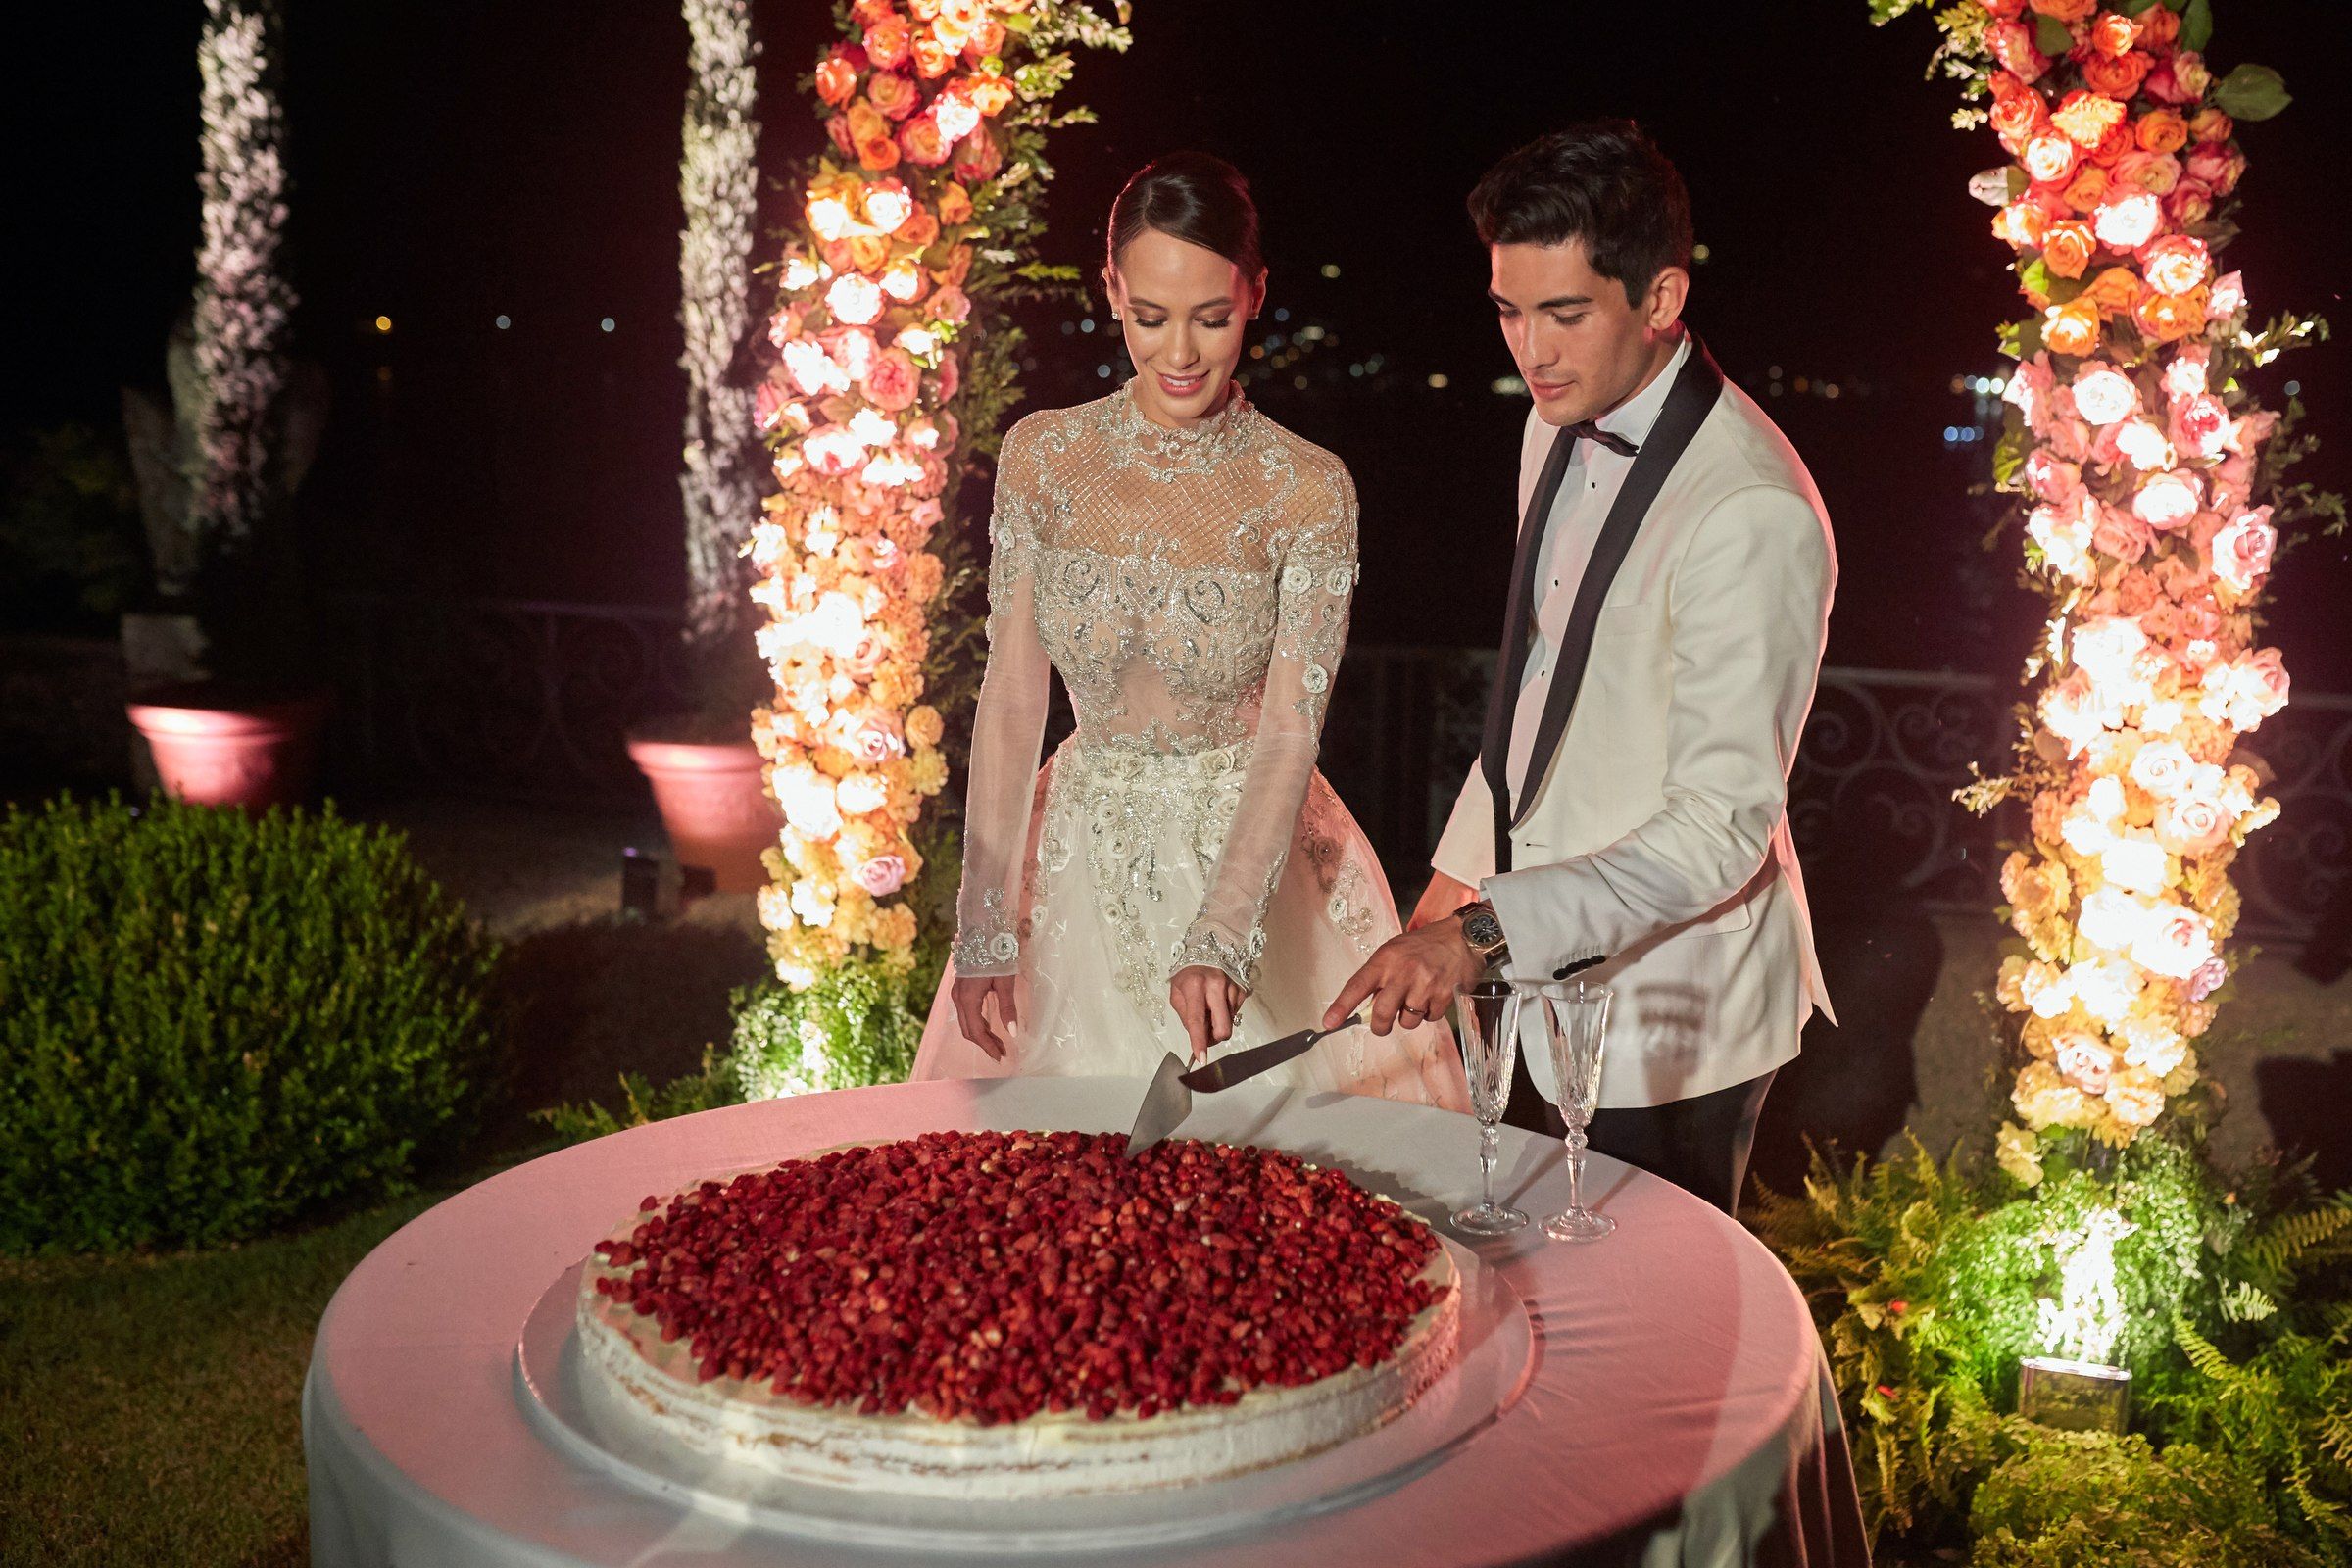 Elegant Wedding Cake with Flowers - coucoucake - cake and baking blog